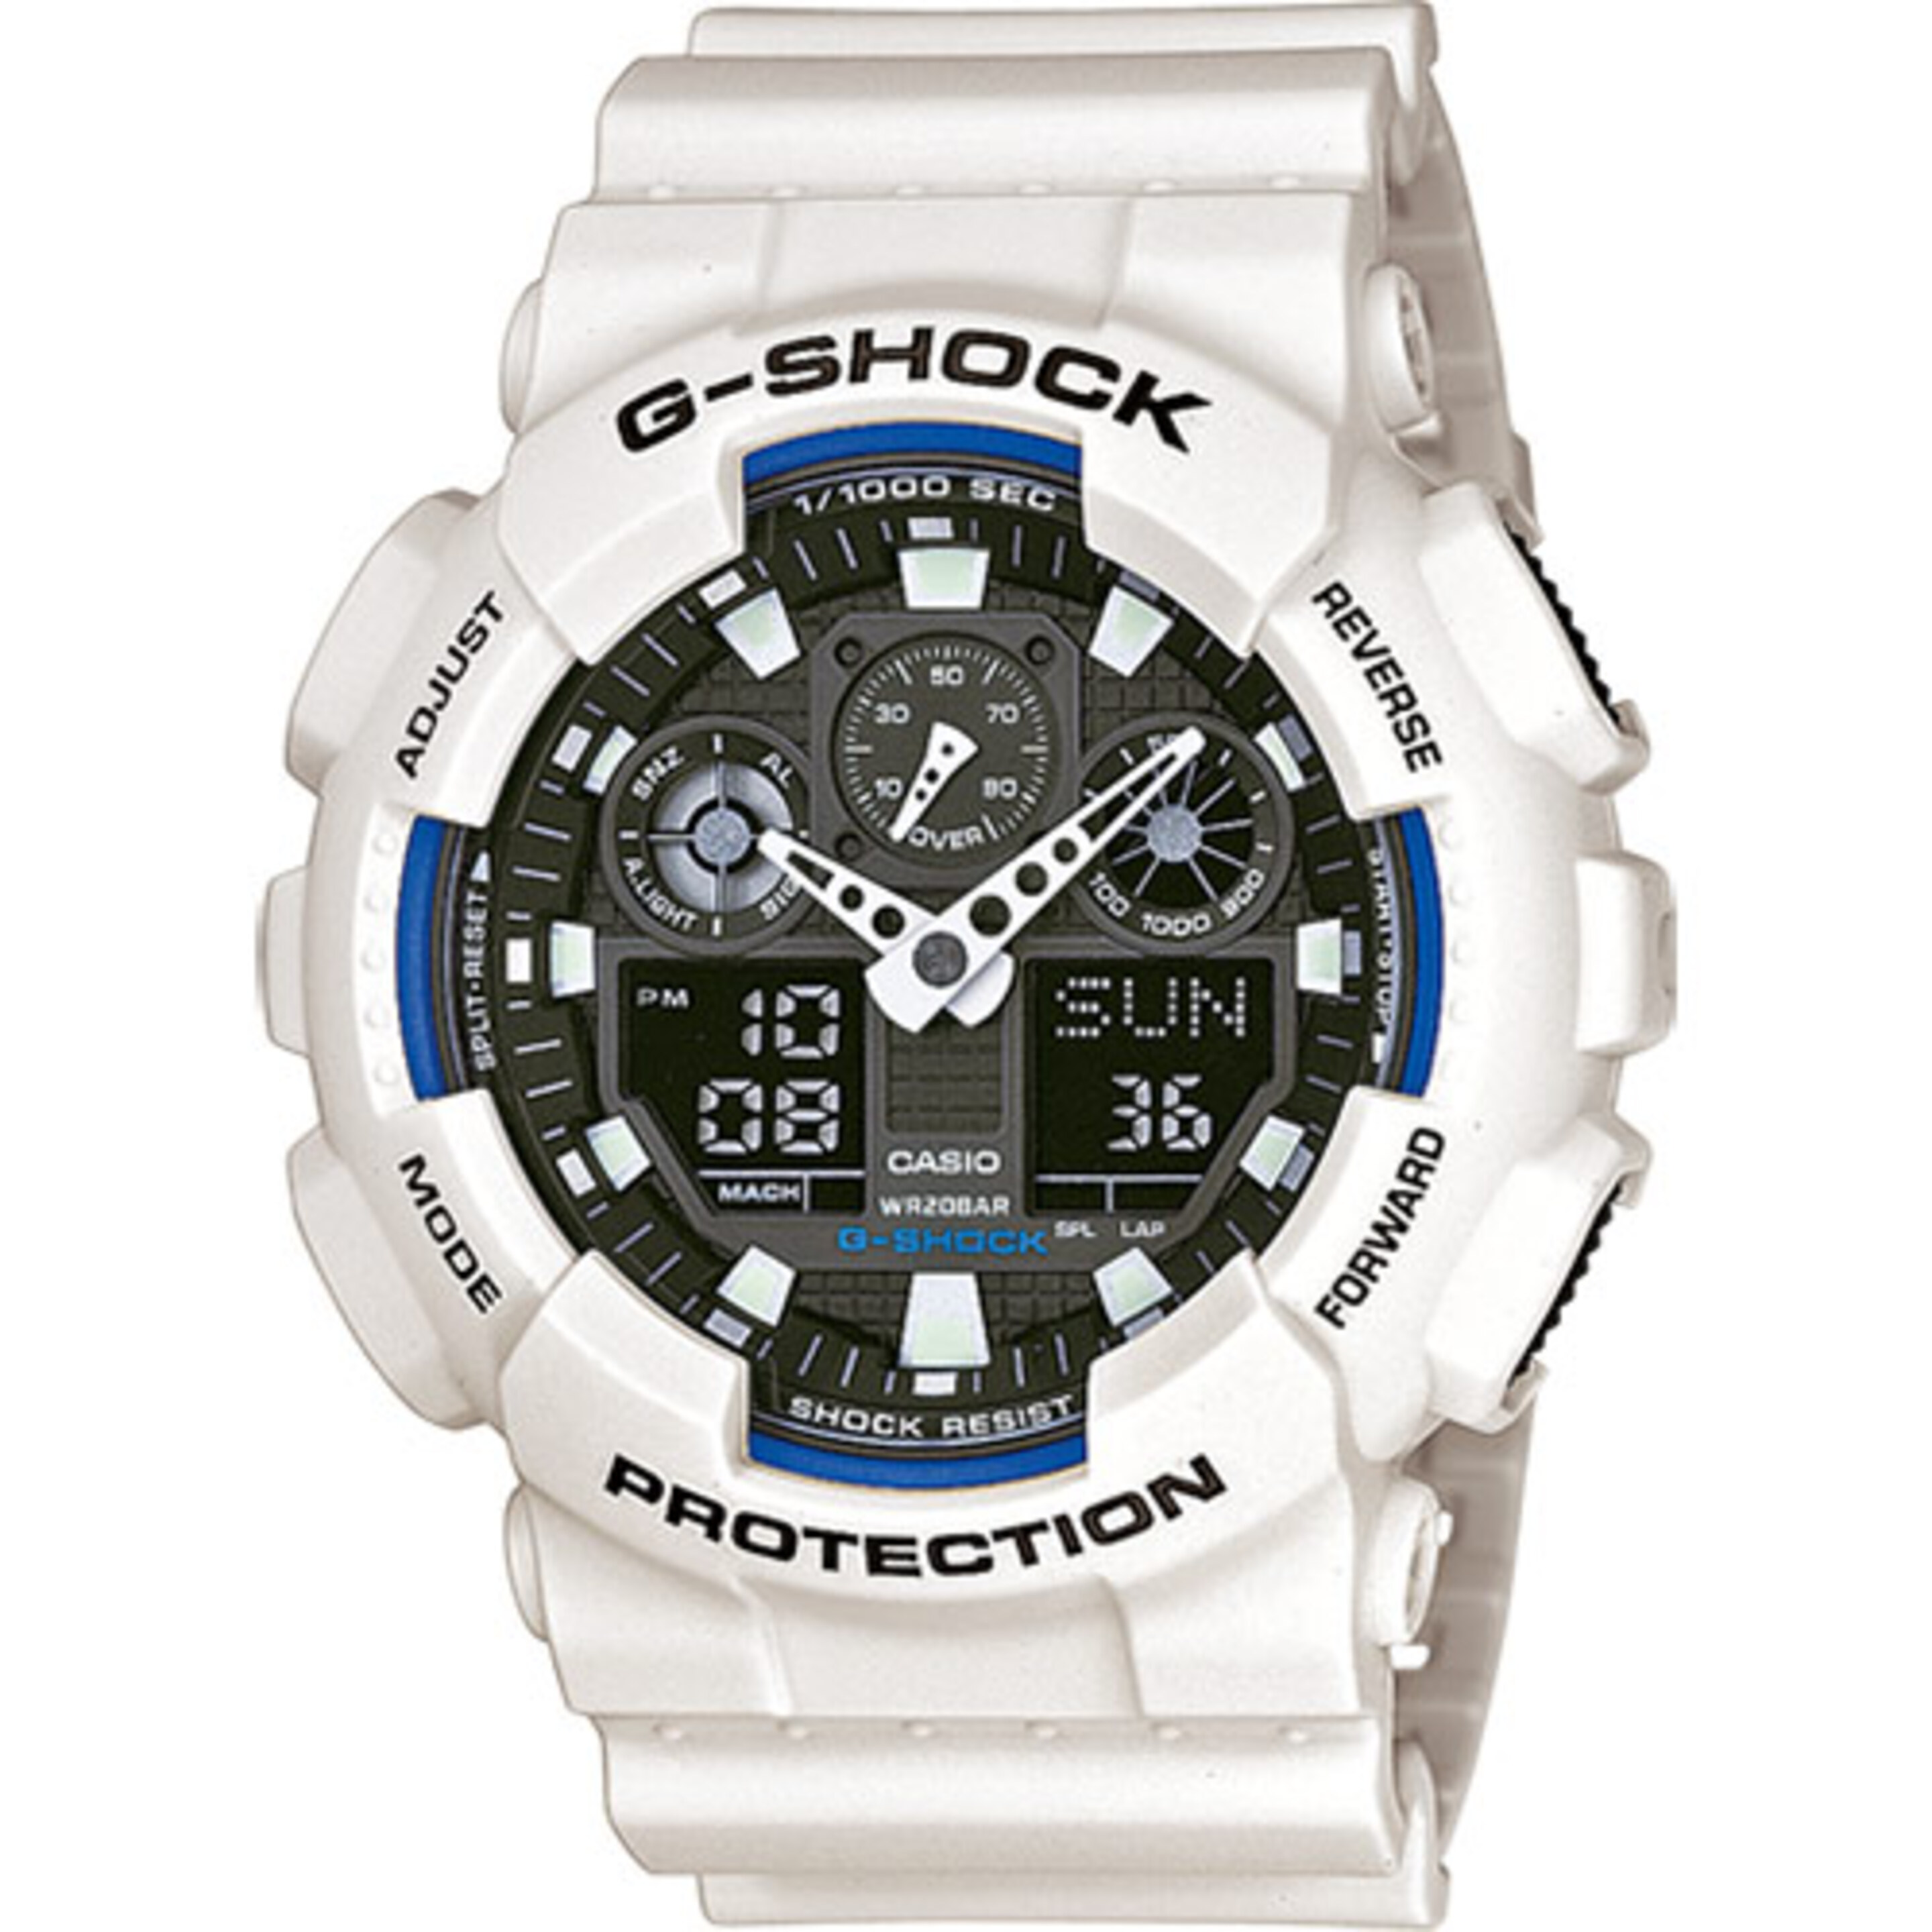 Reloj Casio G-shock Ga-100b-7aer - blanco - 